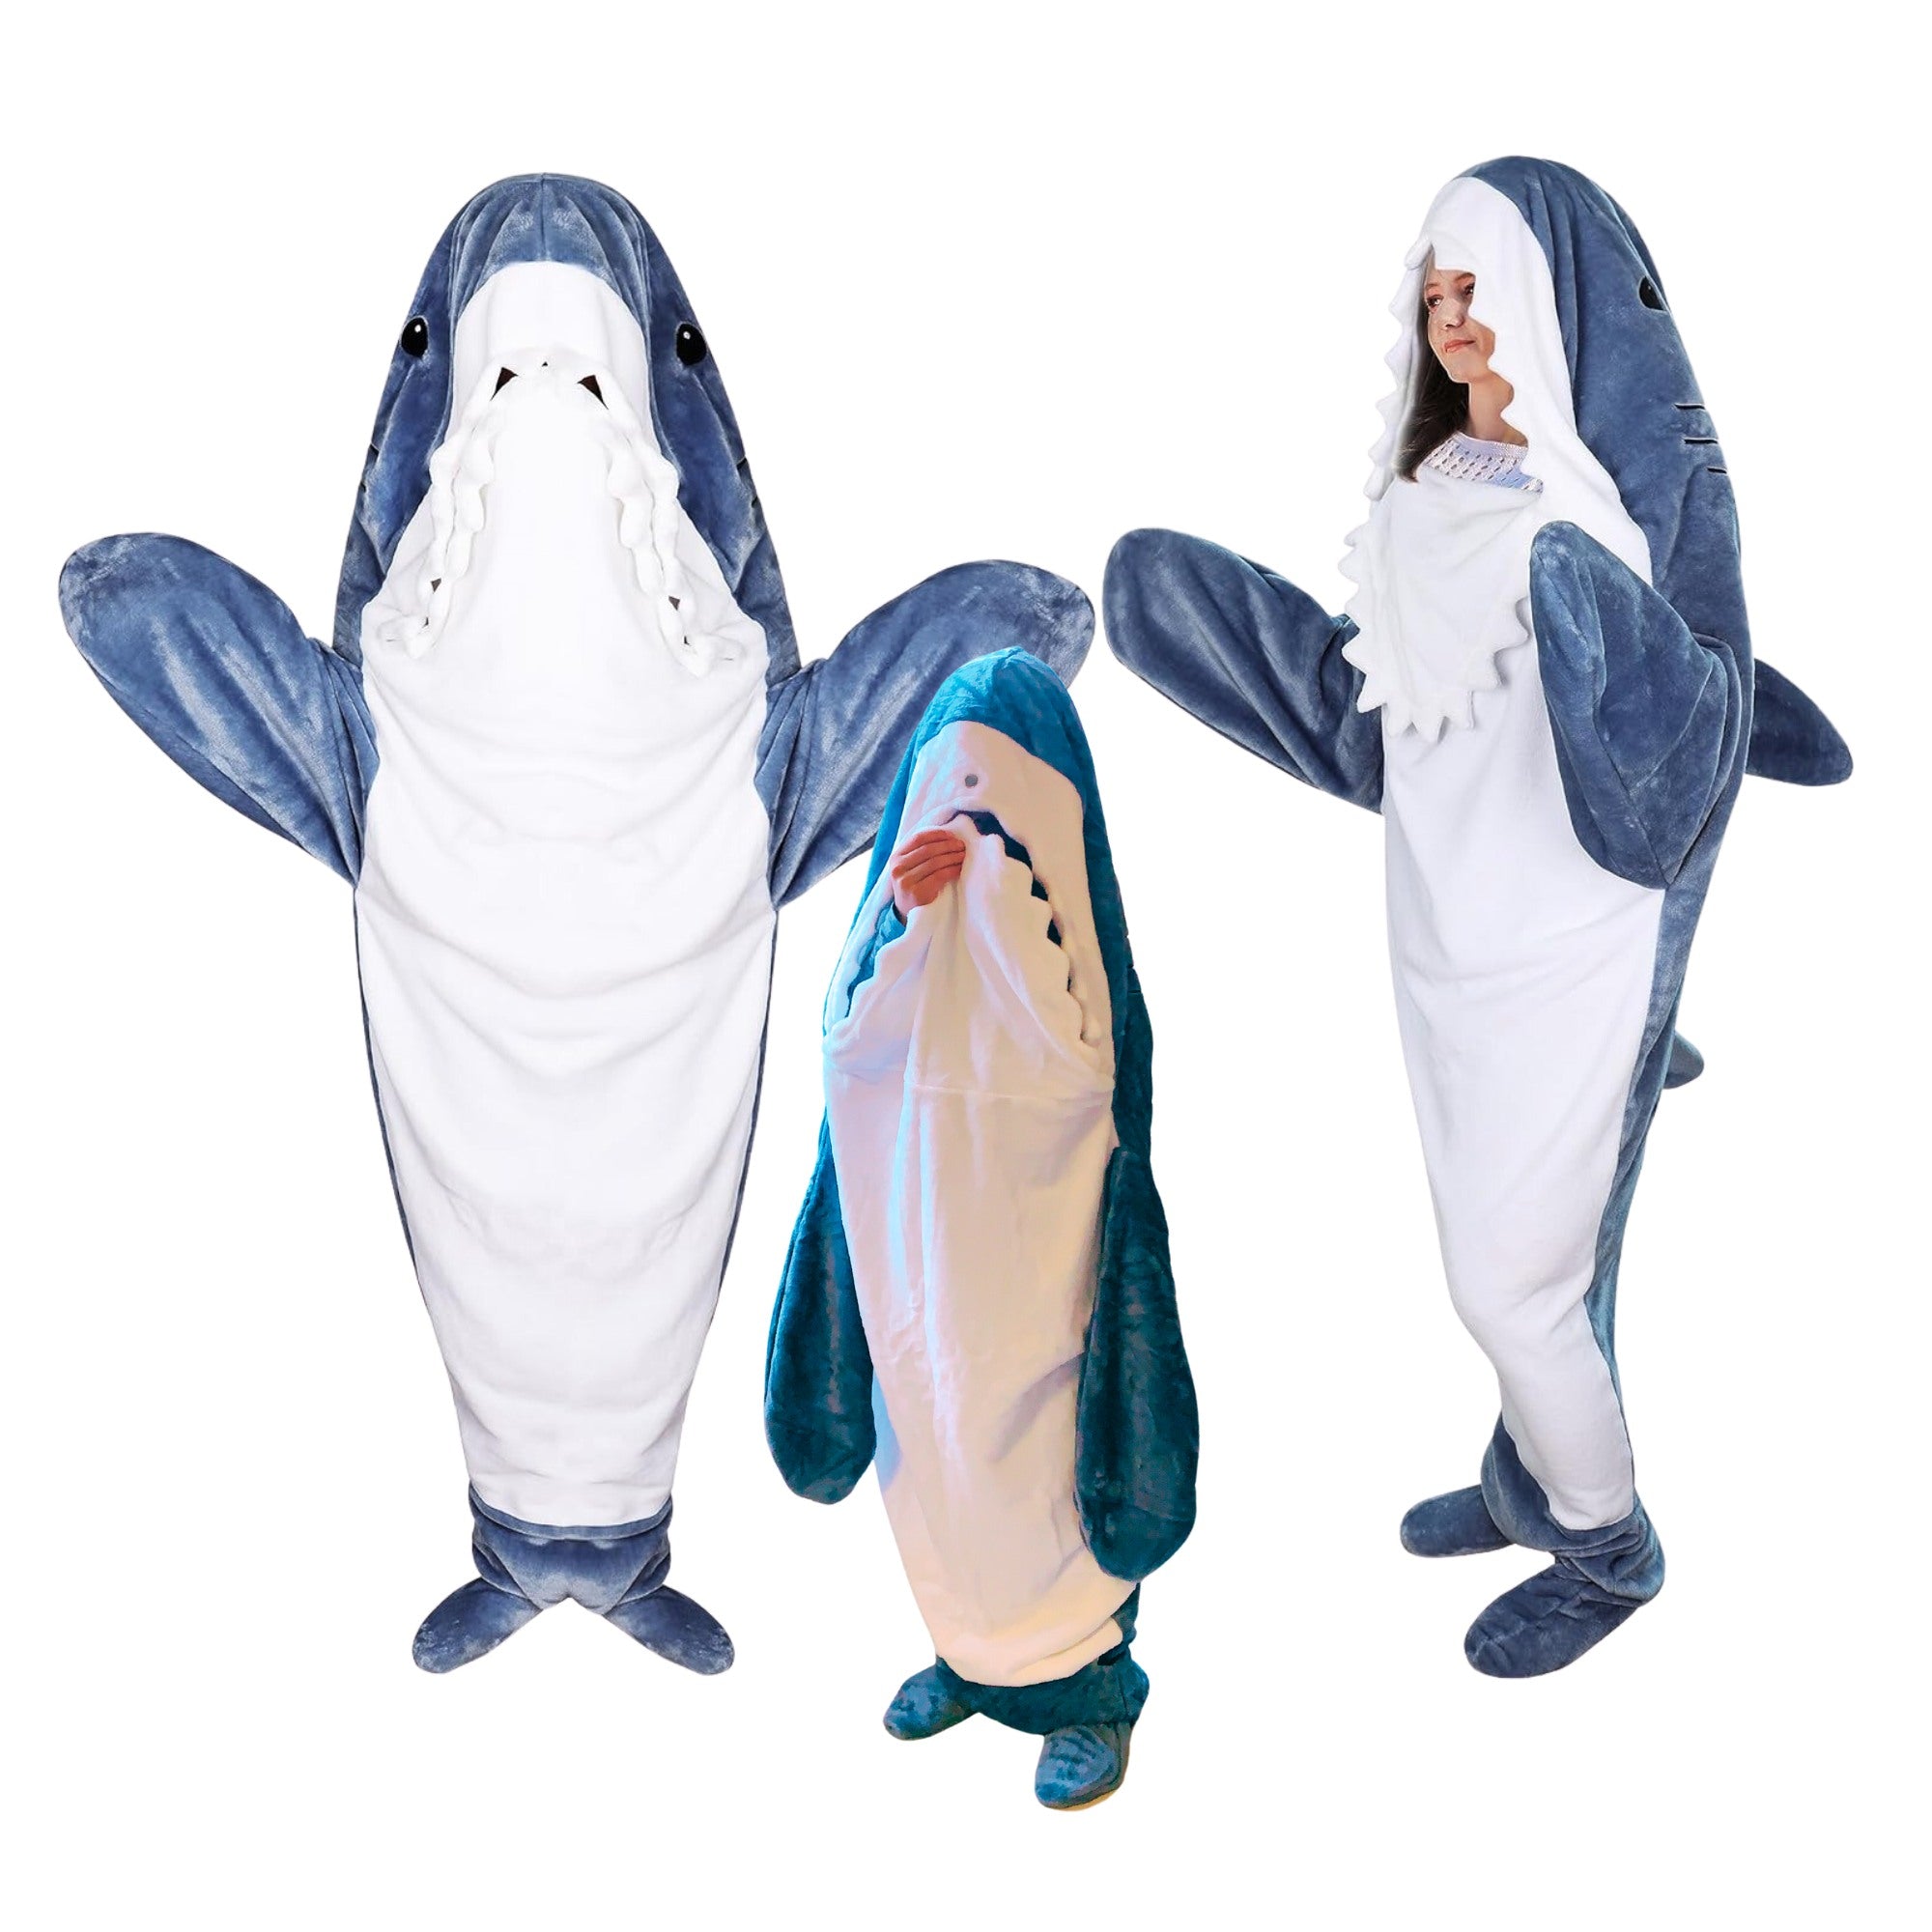 Lucadeau Hai Decke zum Anziehen Kinder Hai Kostüm Geschenk für Kinder (90-115cm) Geburtstagsgeschenk Hai Anzug Shark Blanket Schlafanzug Hai Onesie Kuschel Hai Decke (Blau, XS)